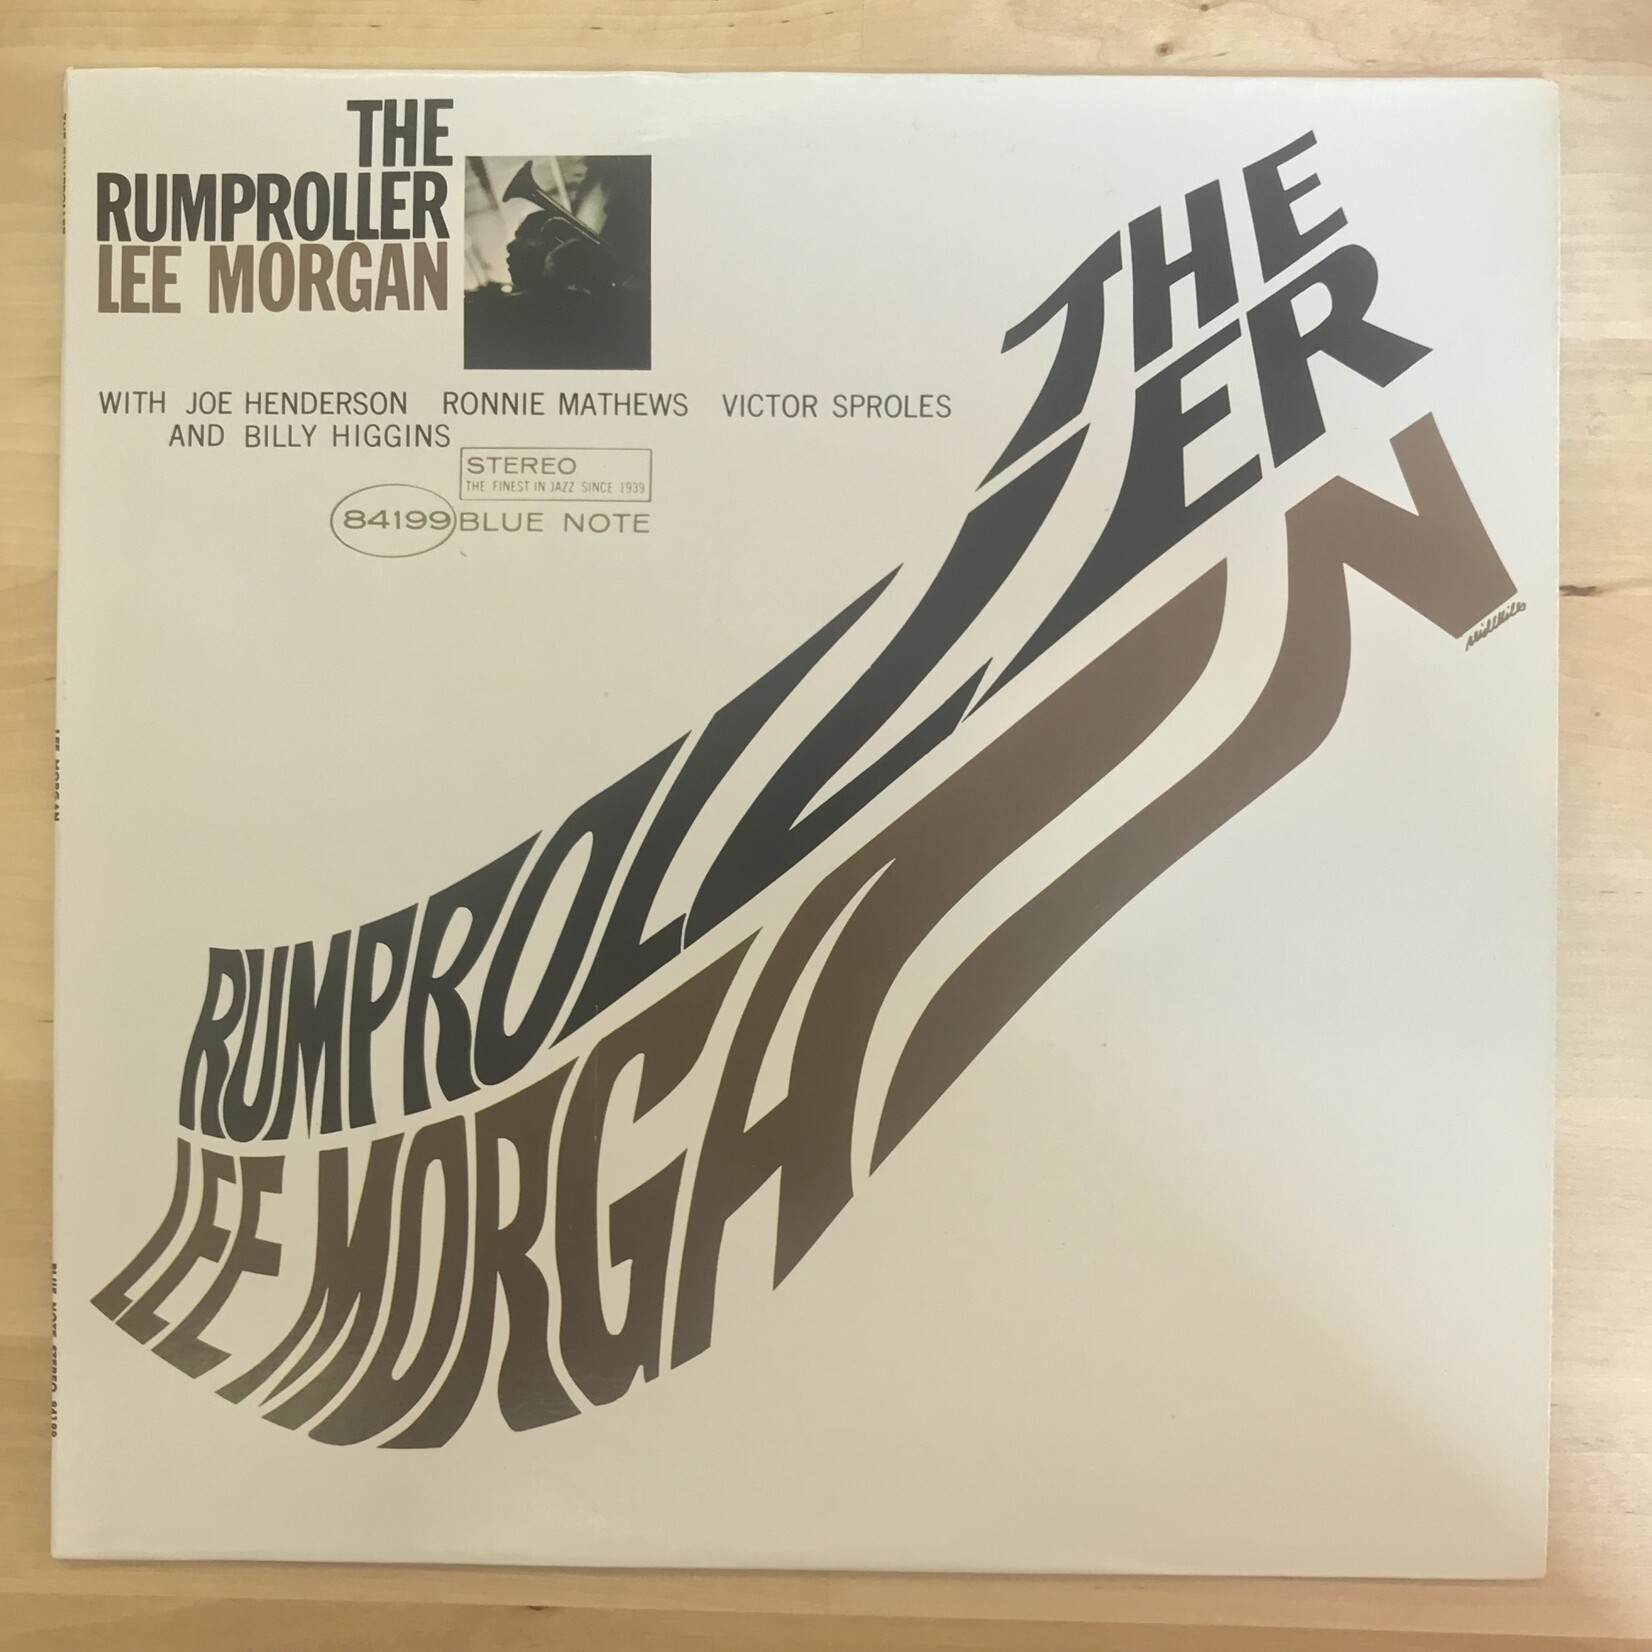 Lee Morgan - The Rumproller - BST 84199 - Vinyl LP (USED)